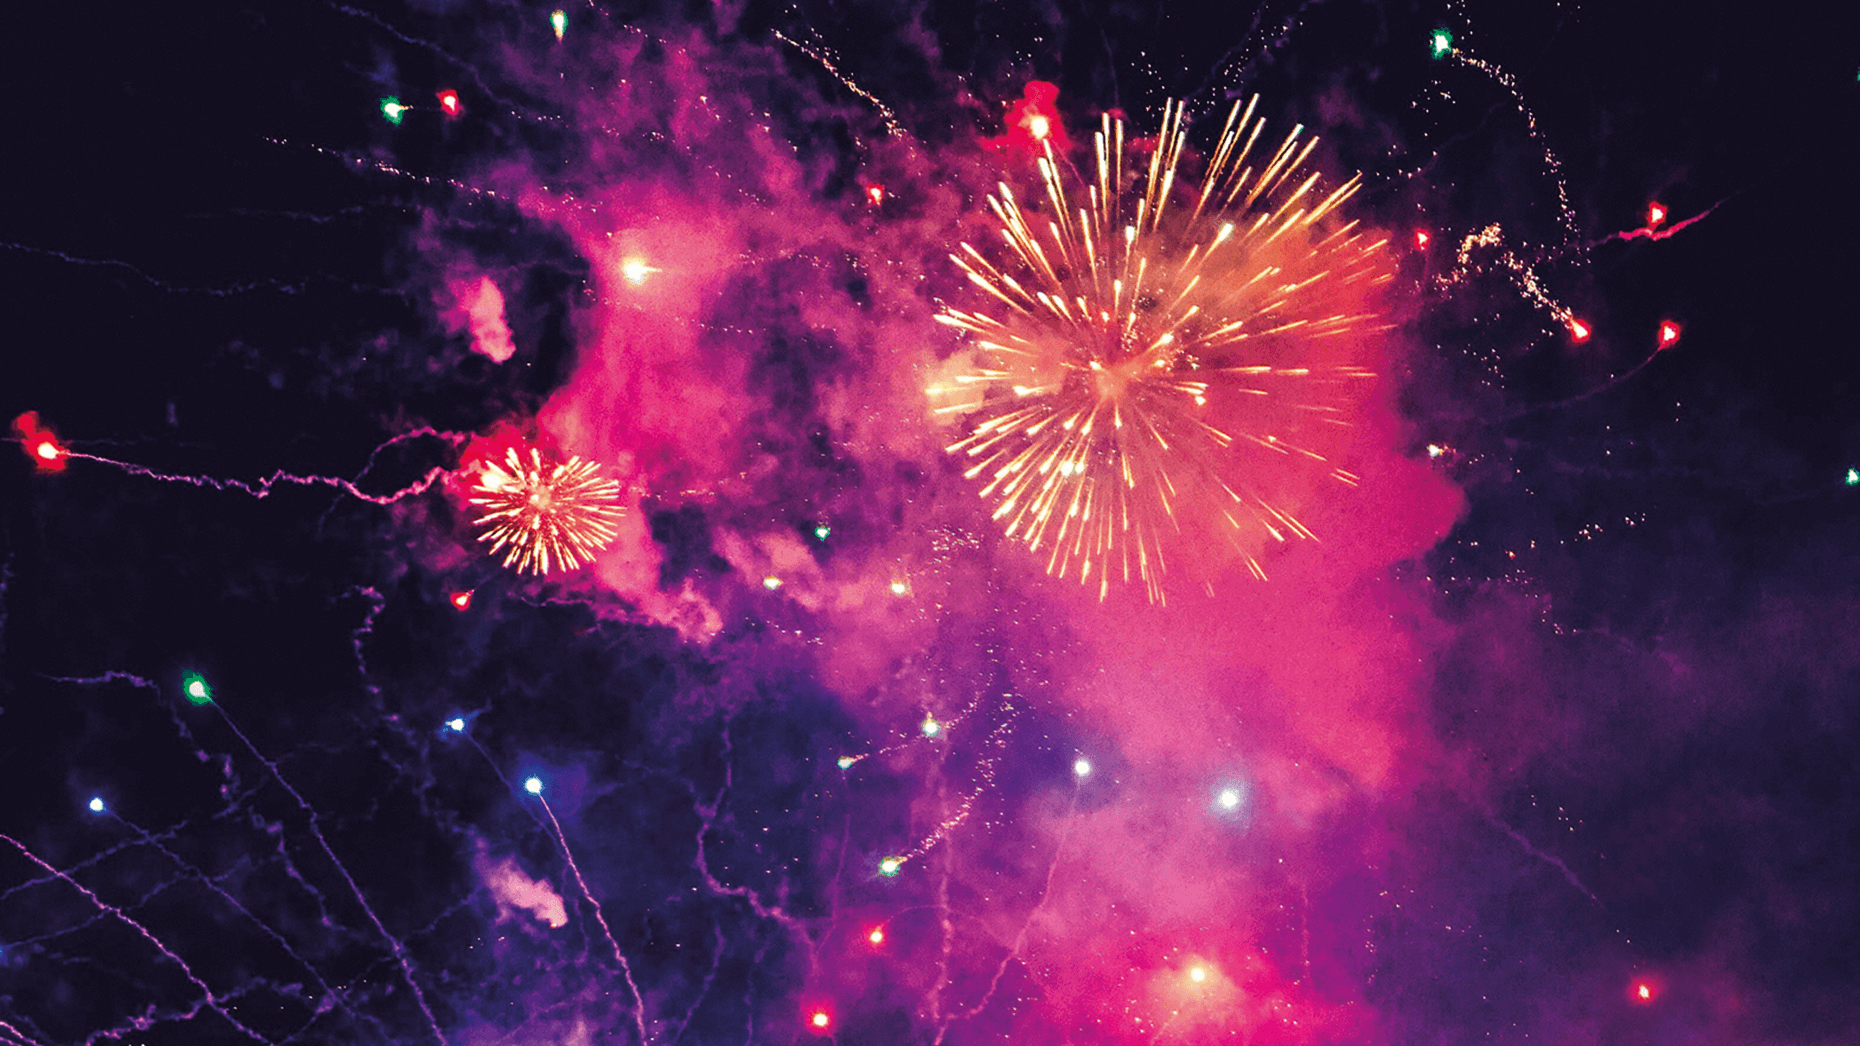 Pink-violett-gelbes Neujahrsfeuerwerk vor schwarzen Himmel